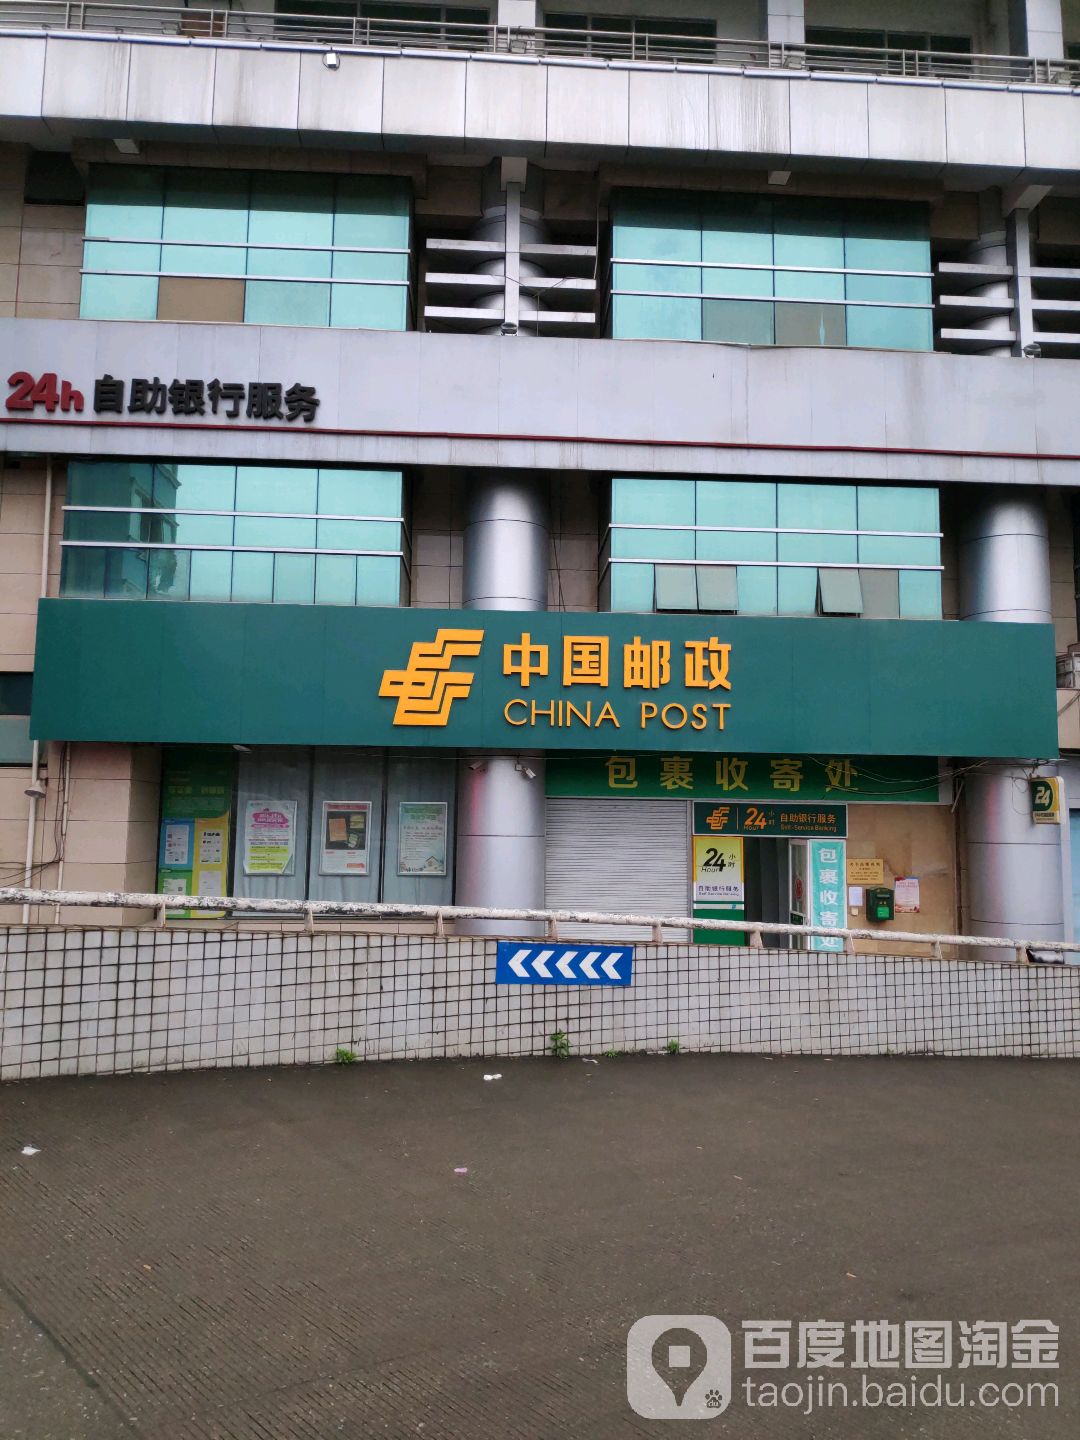 中國郵政儲蓄銀行24小時自助銀行(友愛路職工住宅區南)